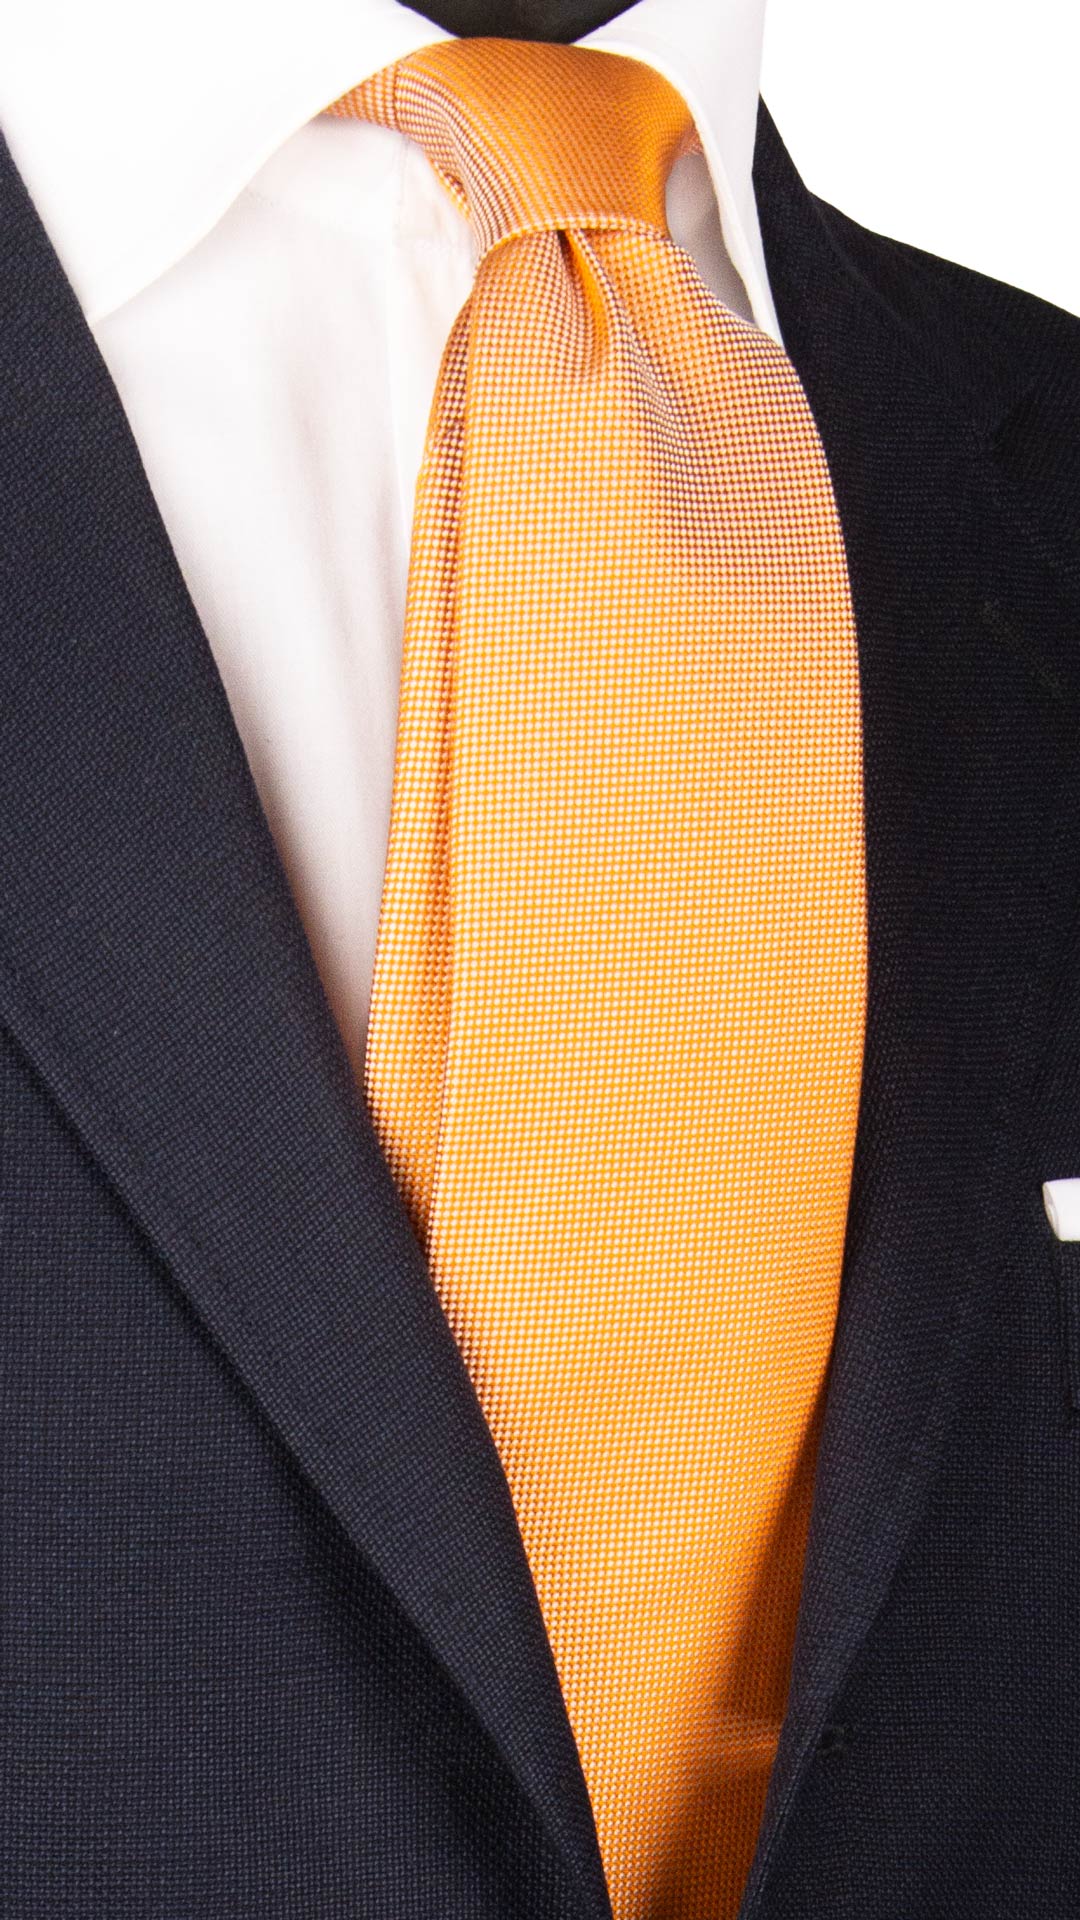 Cravatta di Seta Arancione Tinta Unita 7034 Made in Italy Graffeo Cravatte